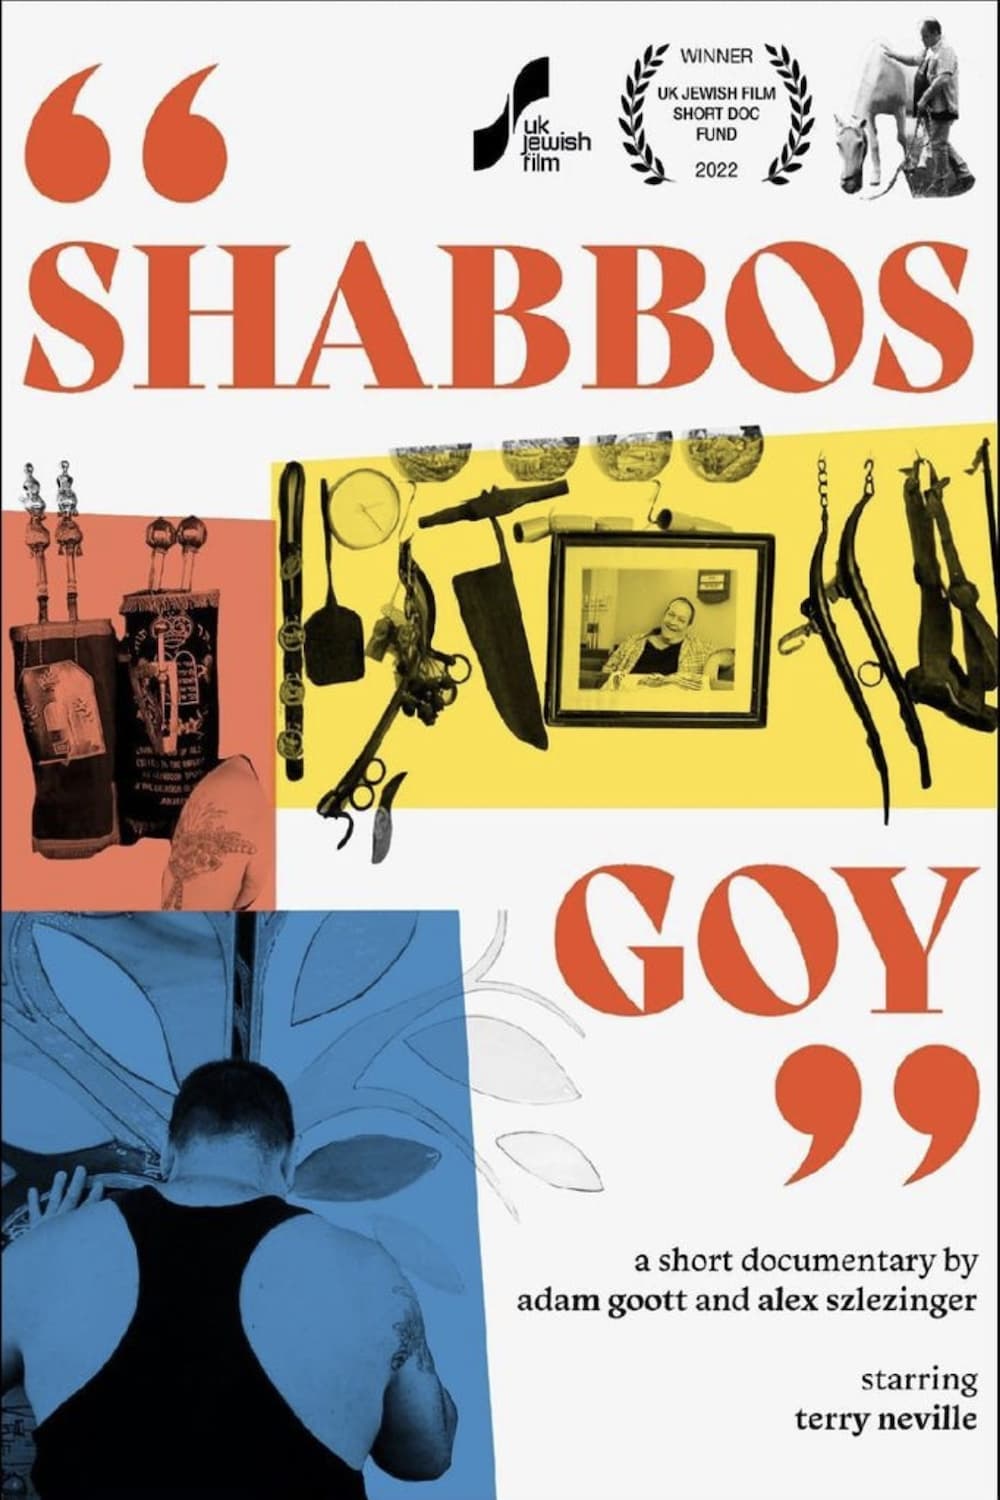 "Shabbos Goy"